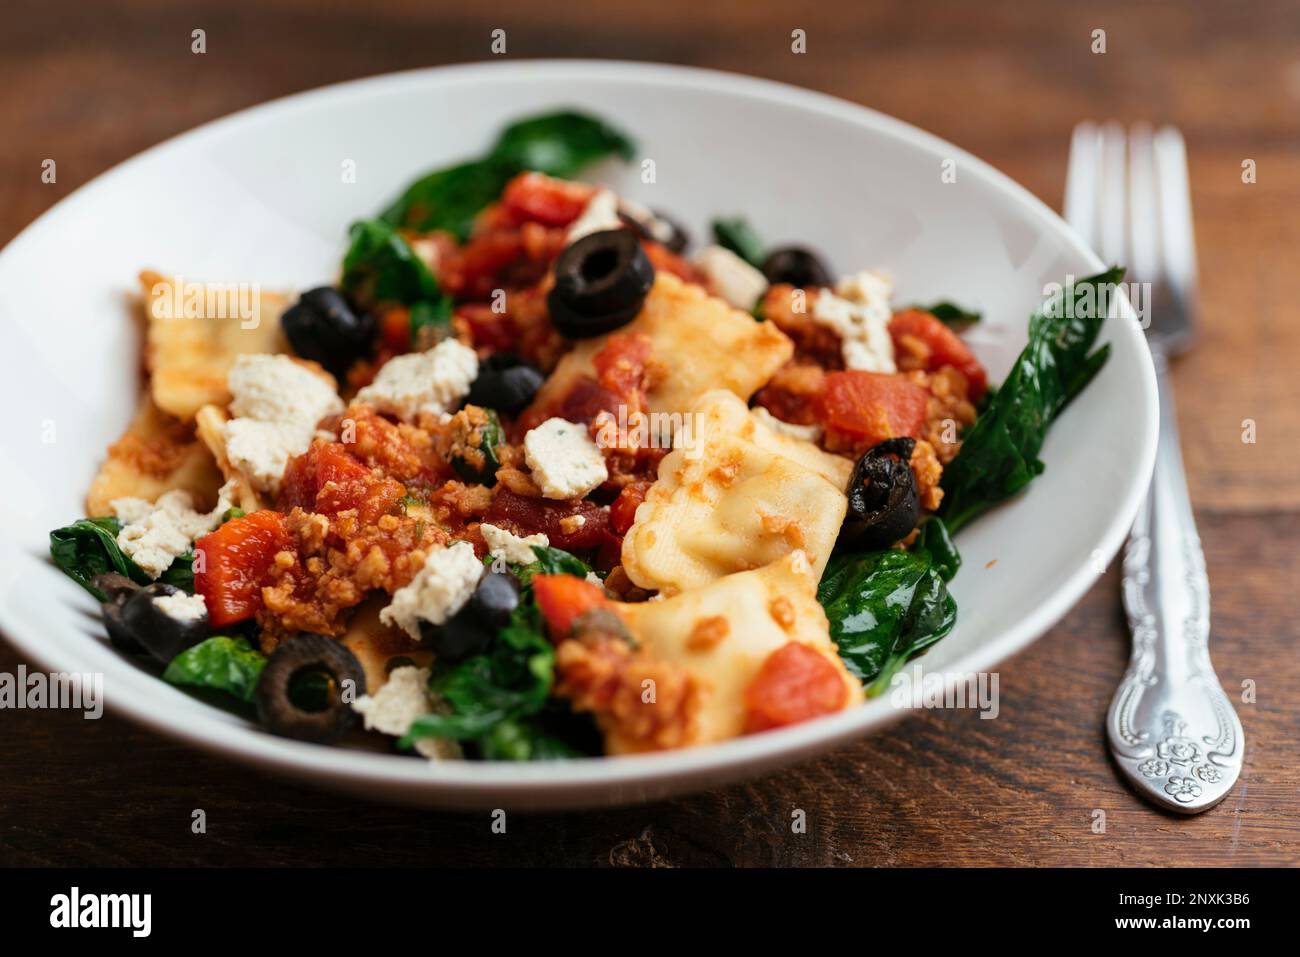 Ciotola con ravioli vegani con spinaci, TVP, olive, salsa di pomodoro e feta vegana fatta in casa. Foto Stock